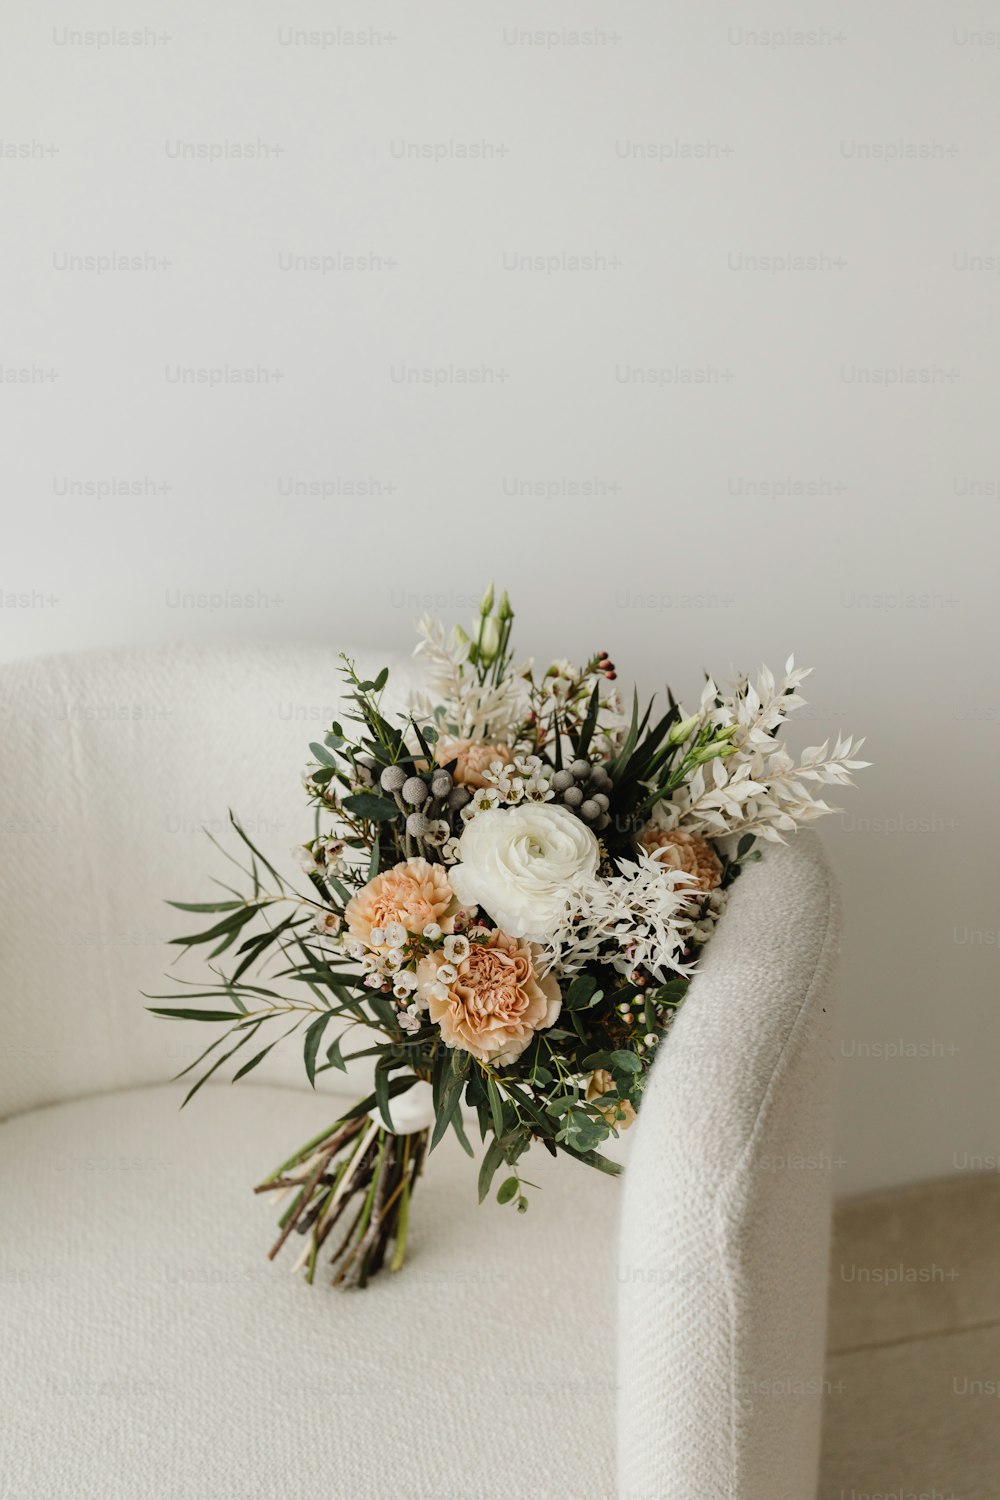 Un ramo de flores sentado en una silla blanca